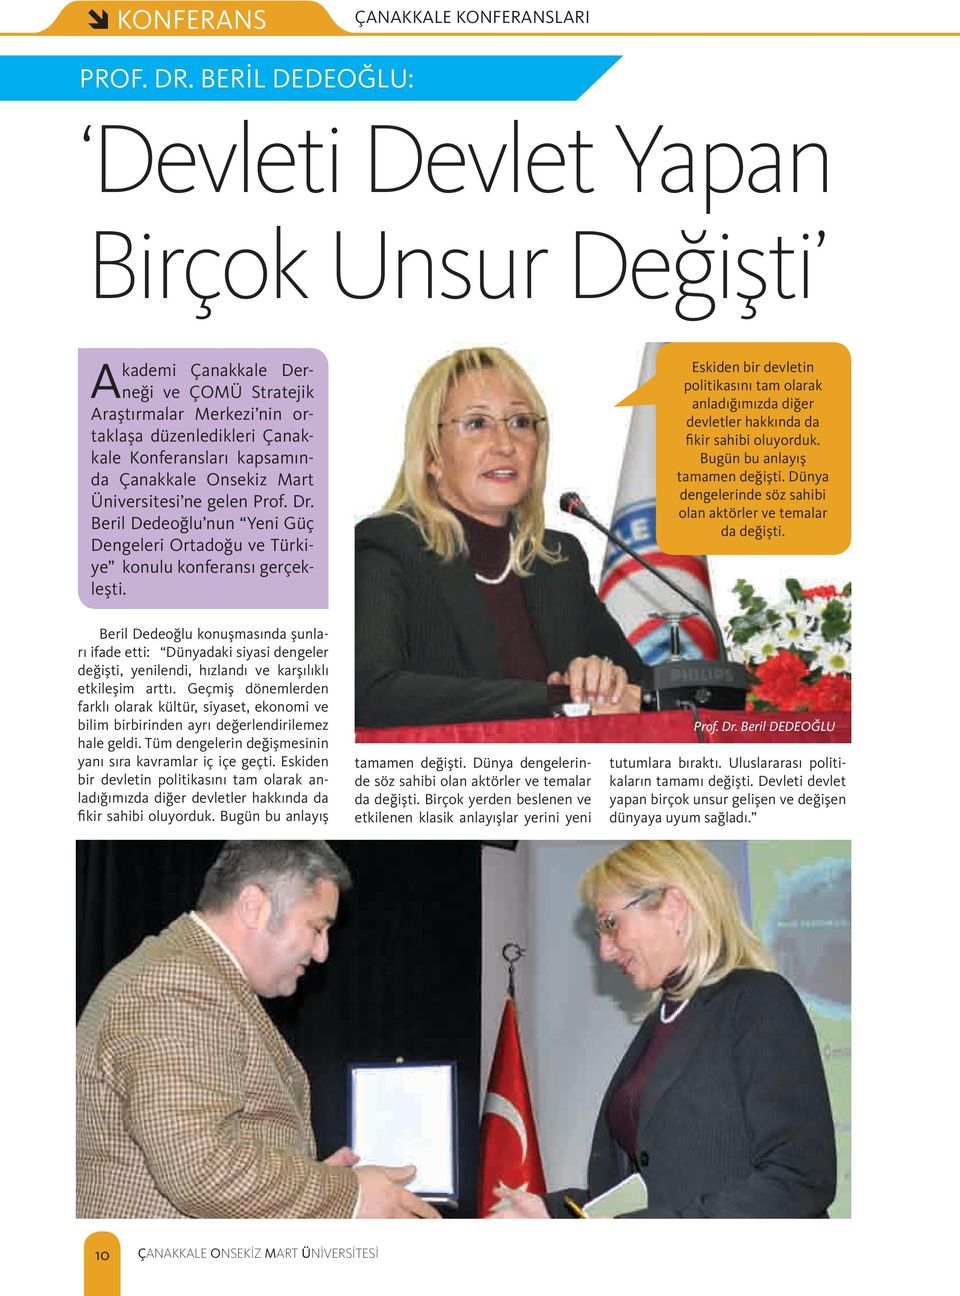 Onsekiz Mart Üniversitesi ne gelen Prof. Dr. Beril Dedeoğlu nun Yeni Güç Dengeleri Ortadoğu ve Türkiye konulu konferansı gerçekleşti.